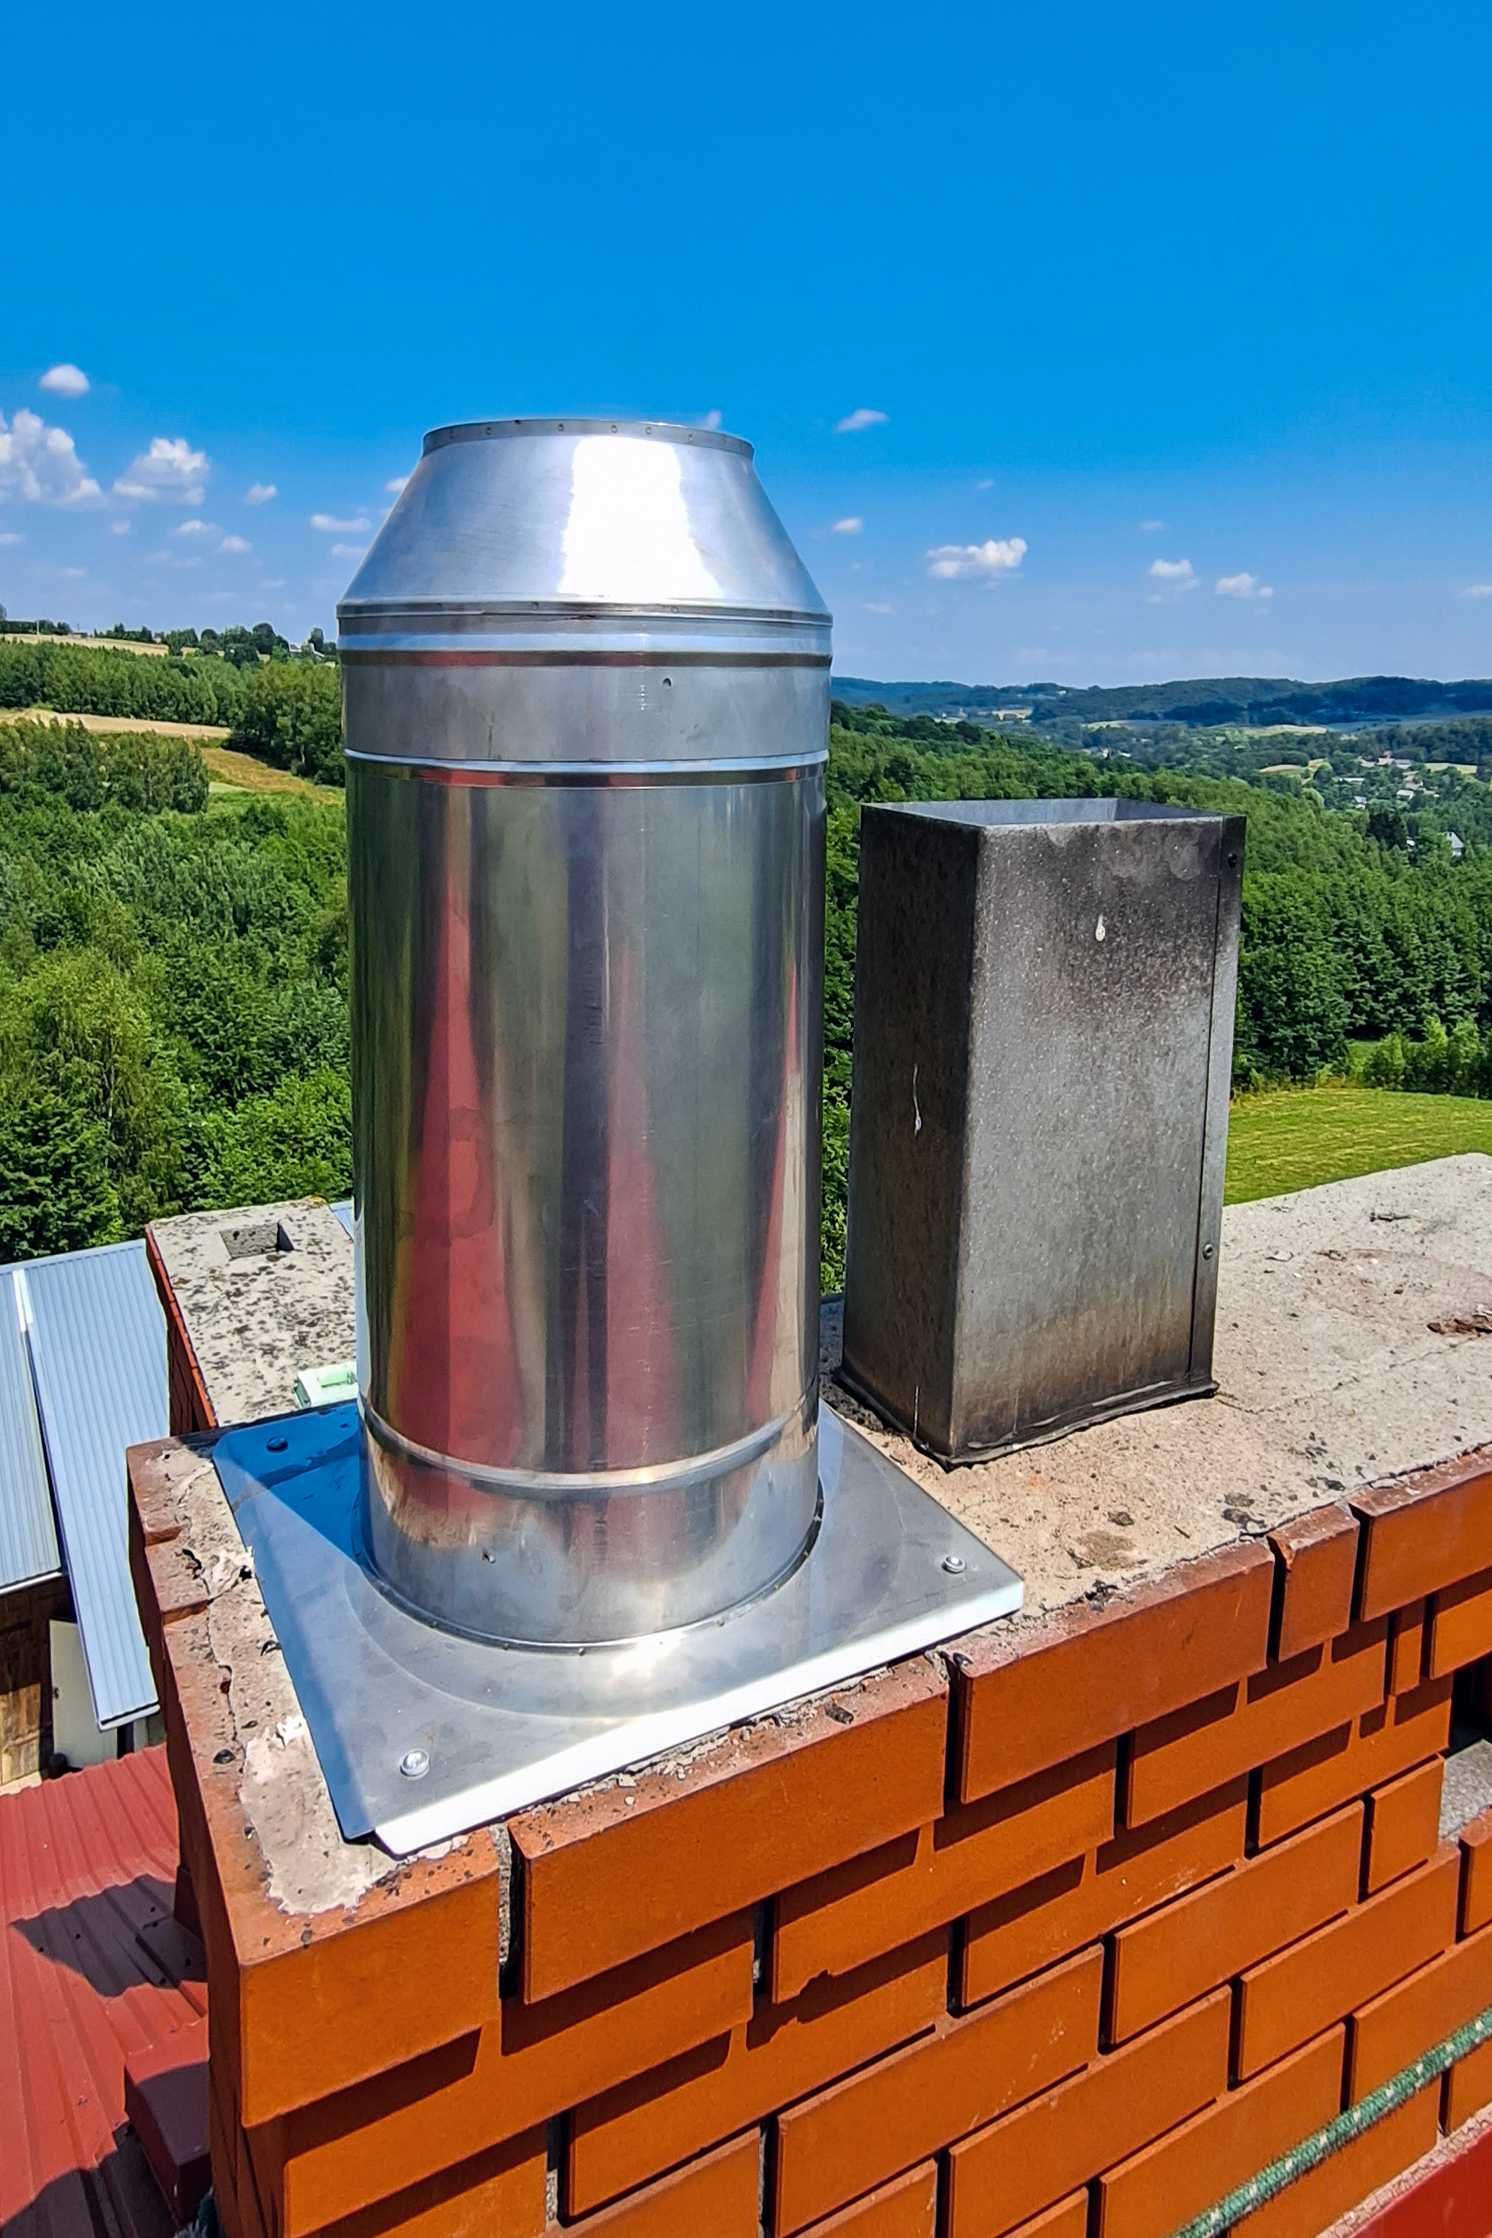 Montaż Wkładów kominowych Frezowanie Diamentowe kominów rozwiercanie